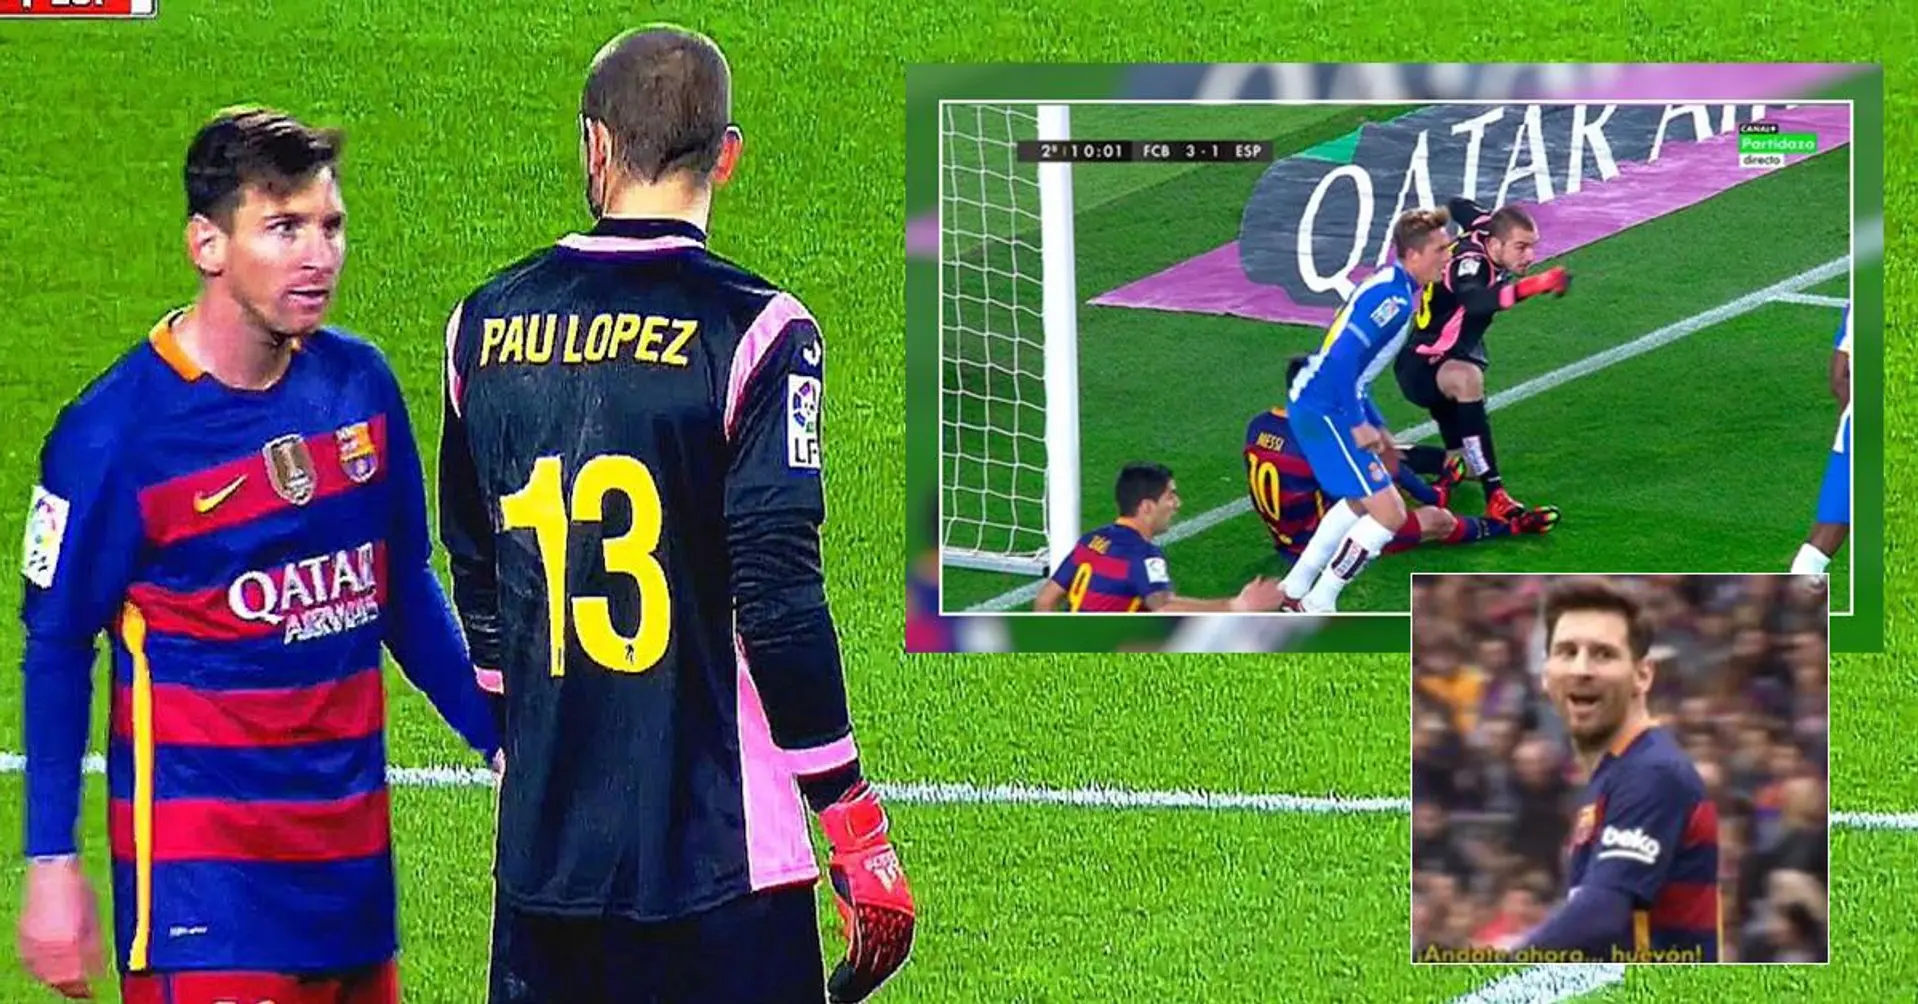 "Continua a camminare, idiota". Cosa è successo tra Lionel Messi e il portiere 21enne Pau Lopez 